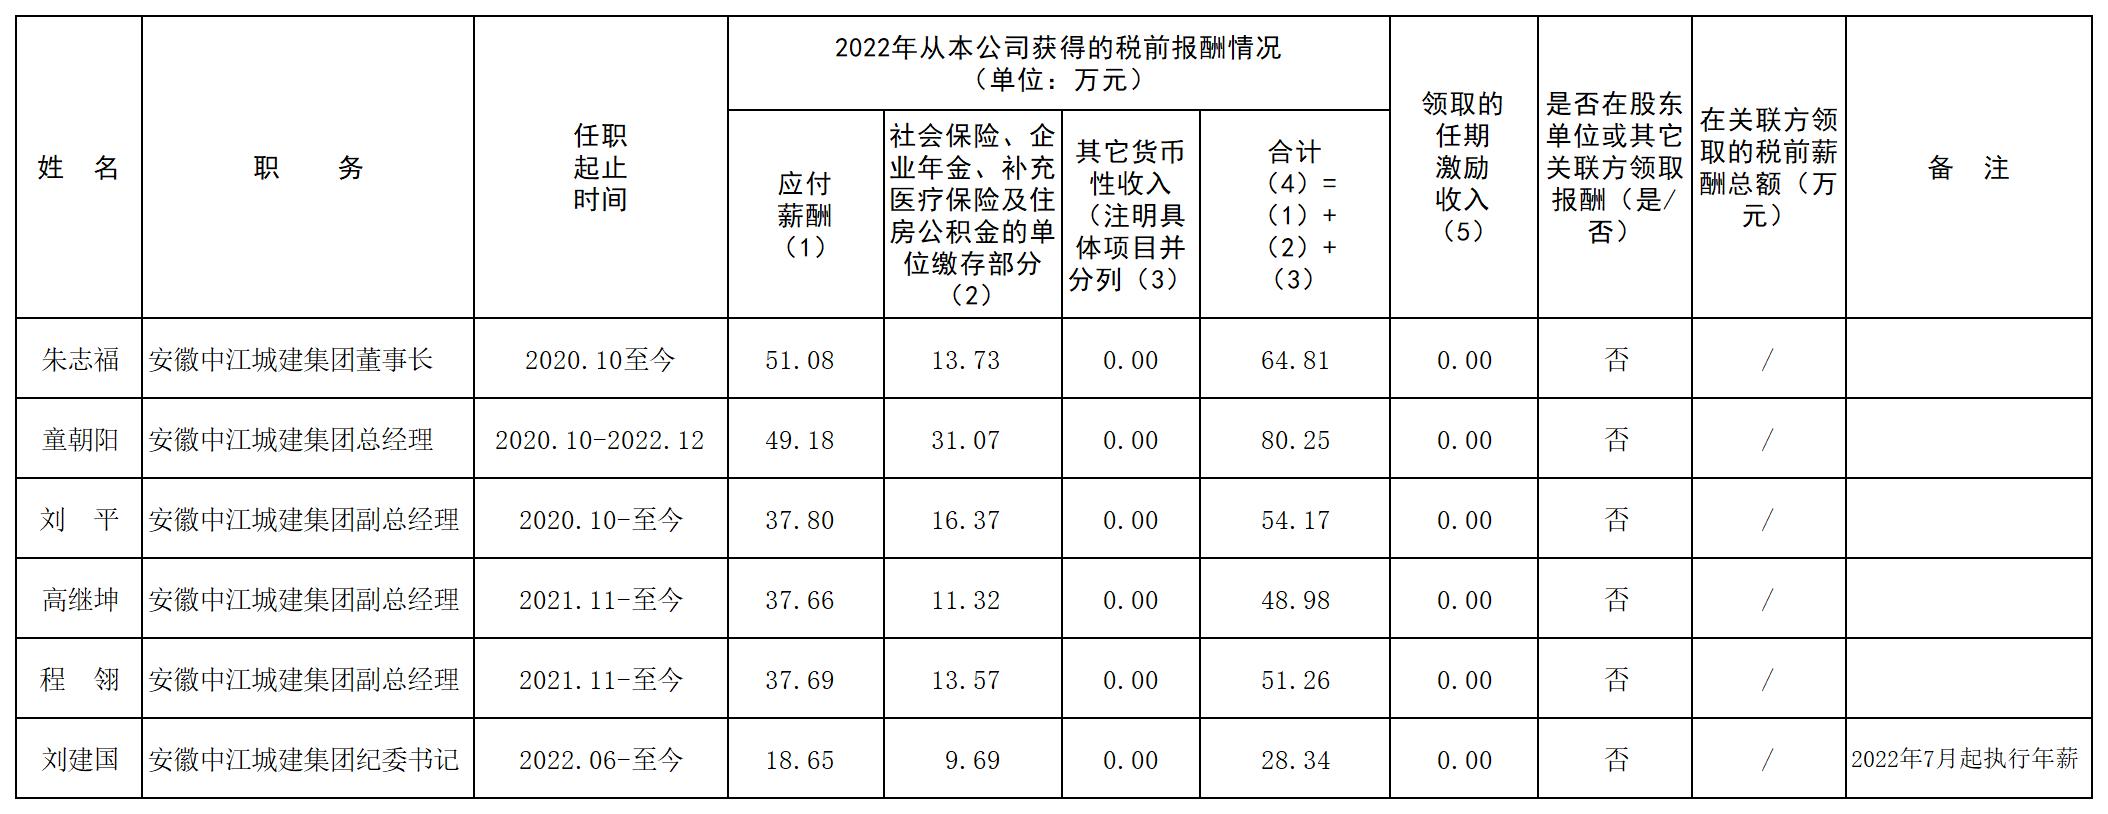 2022年度安徽中江城建集团有限公司领导人员薪酬信息披露表